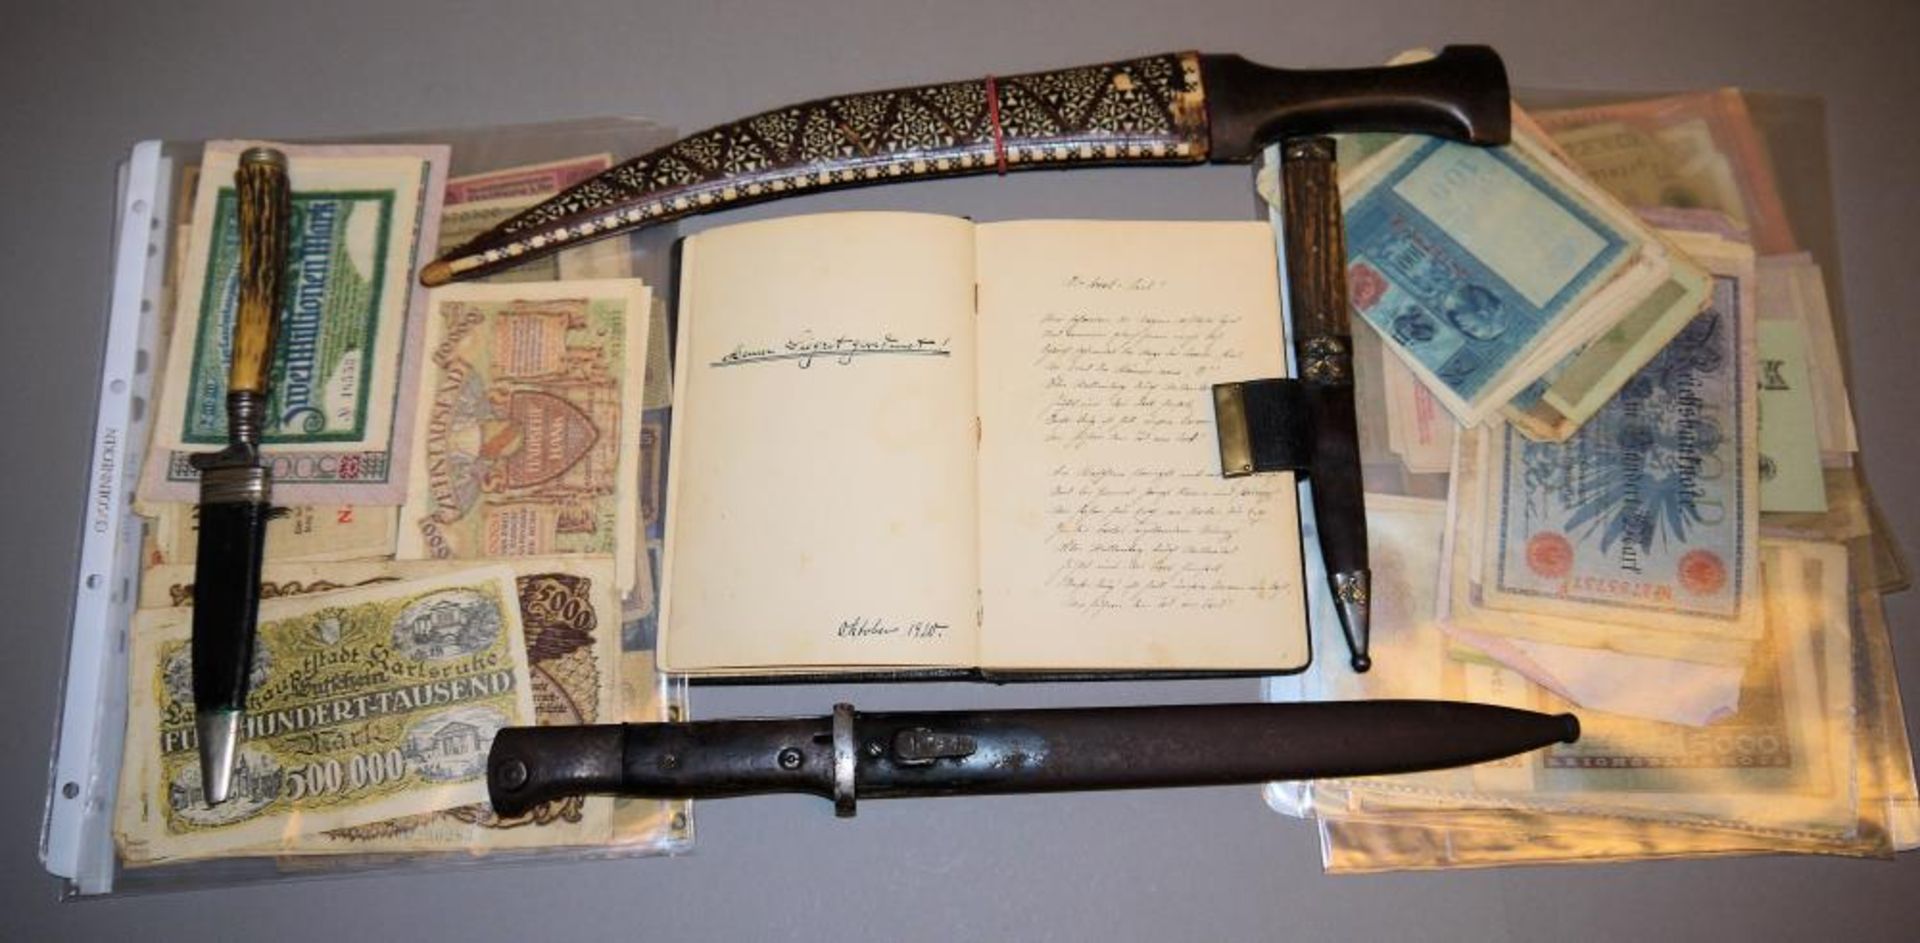 Slg. Stichwaffen 1920/40, Slg. Notgeld und Tagebuch eines Offiziers von 1920 Bajonett 98K, WK I;